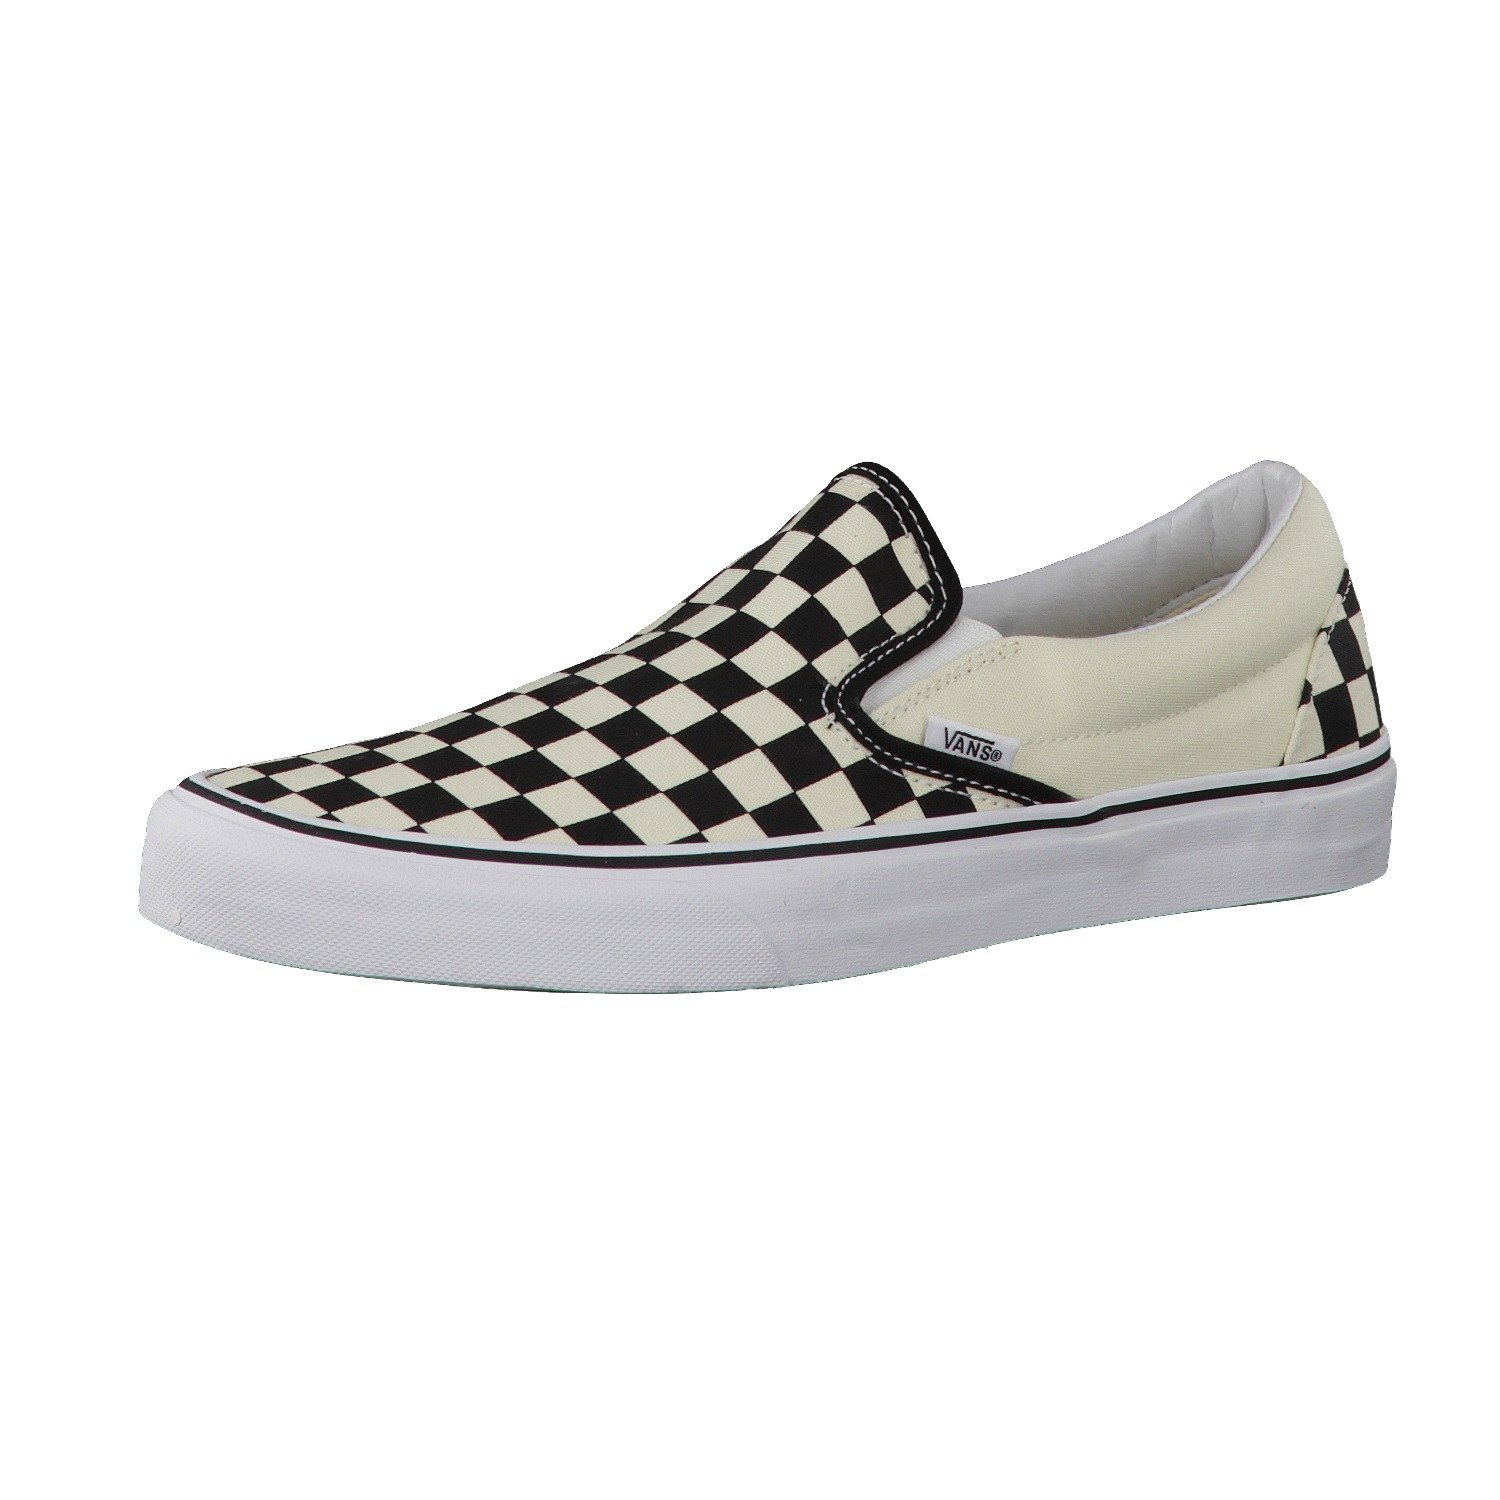 Buy Vans Unisex Old Skool Classic Skate Shoes | Fado168